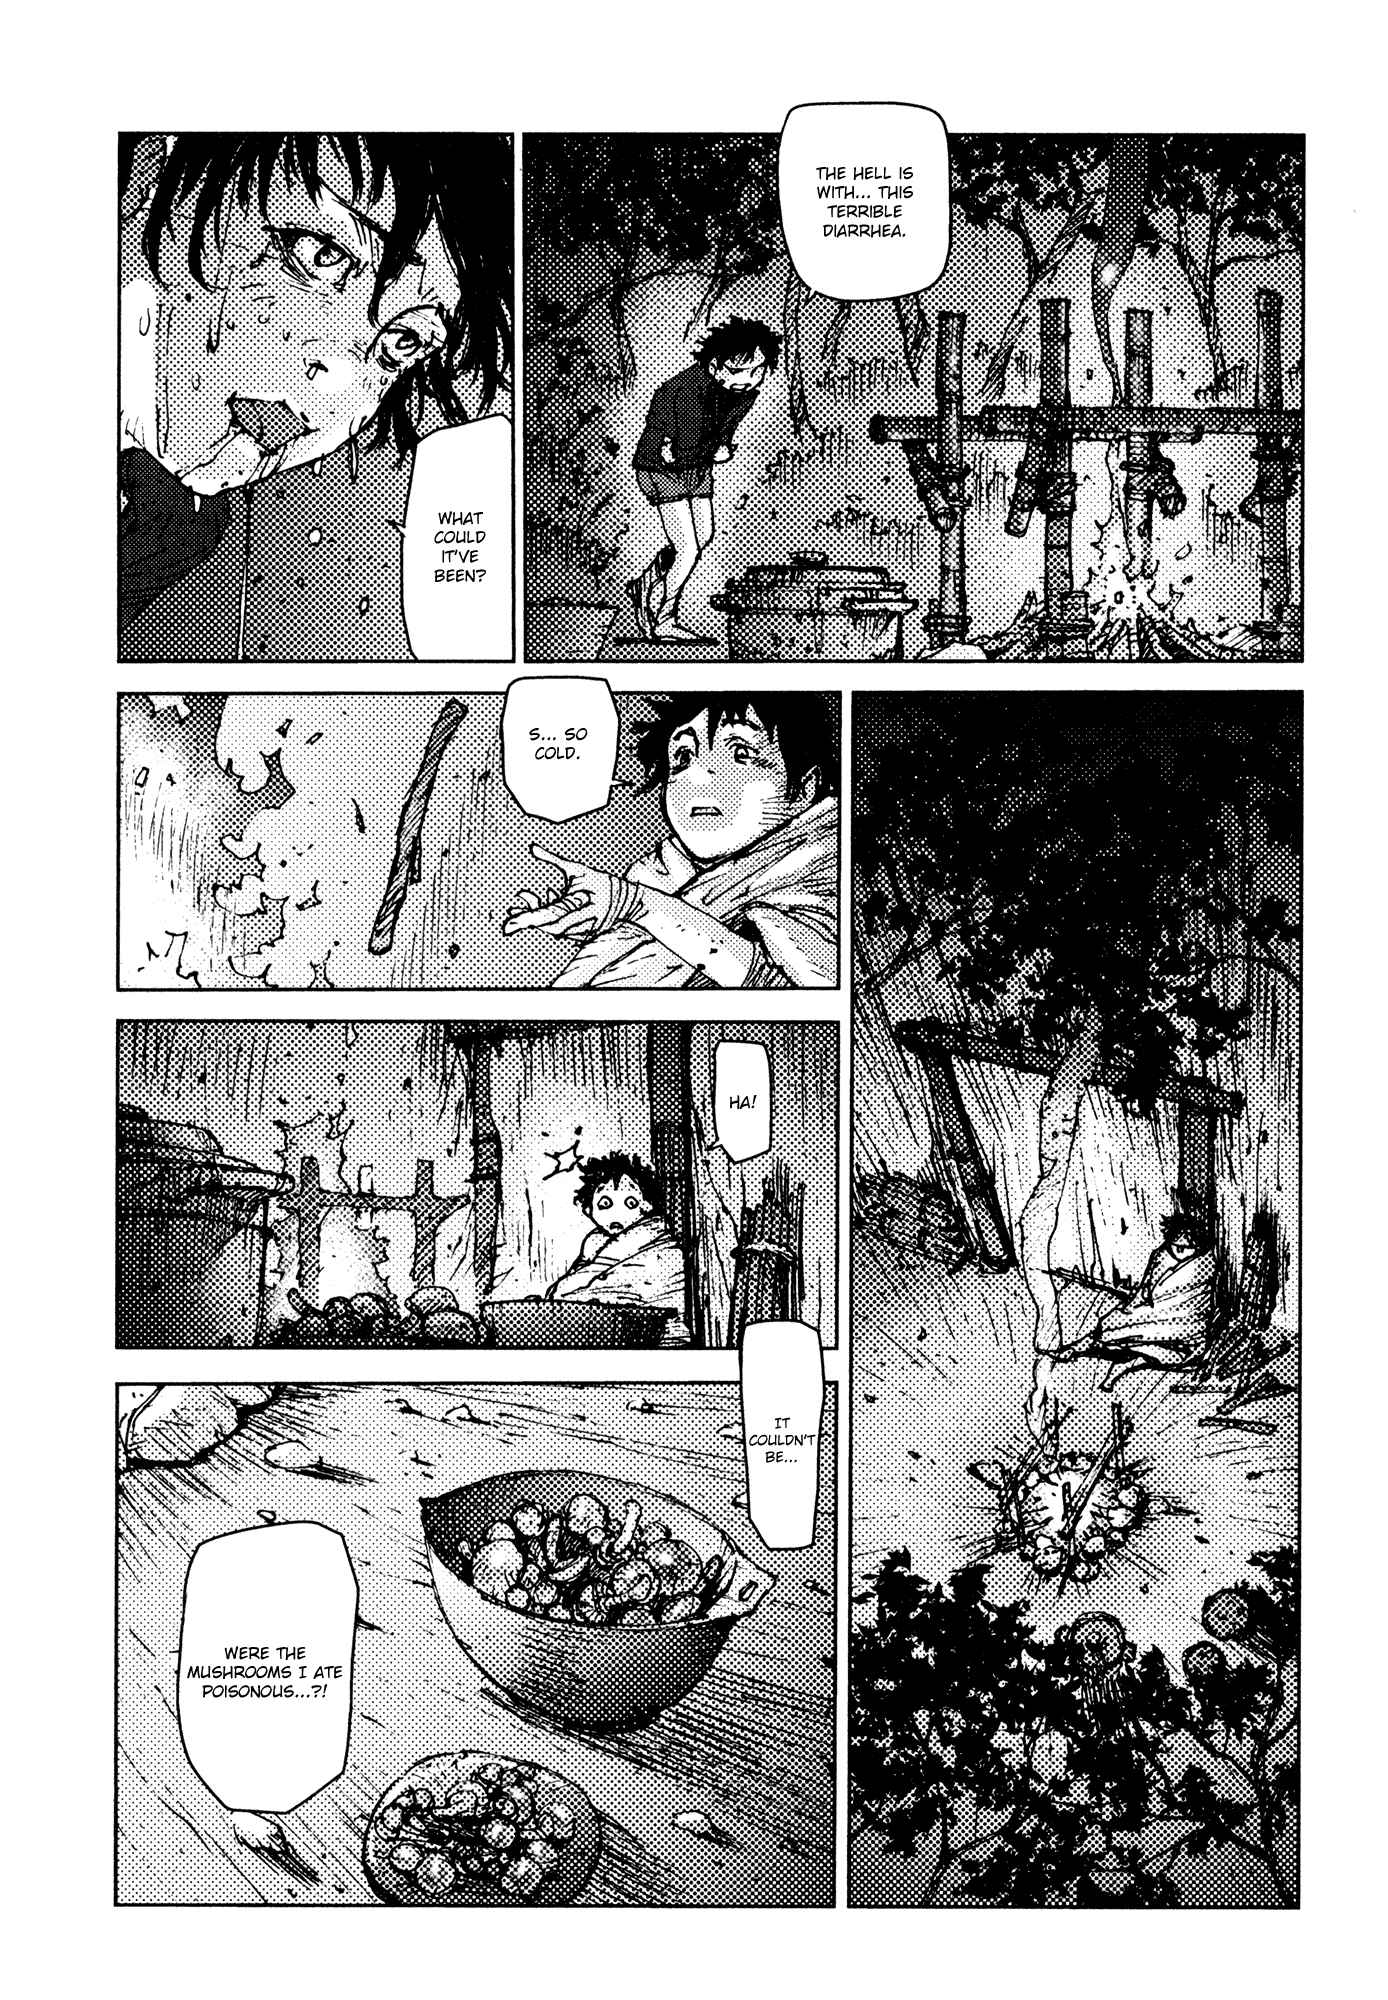 Survival: Shounen S no Kiroku Vol.1 Ch.12